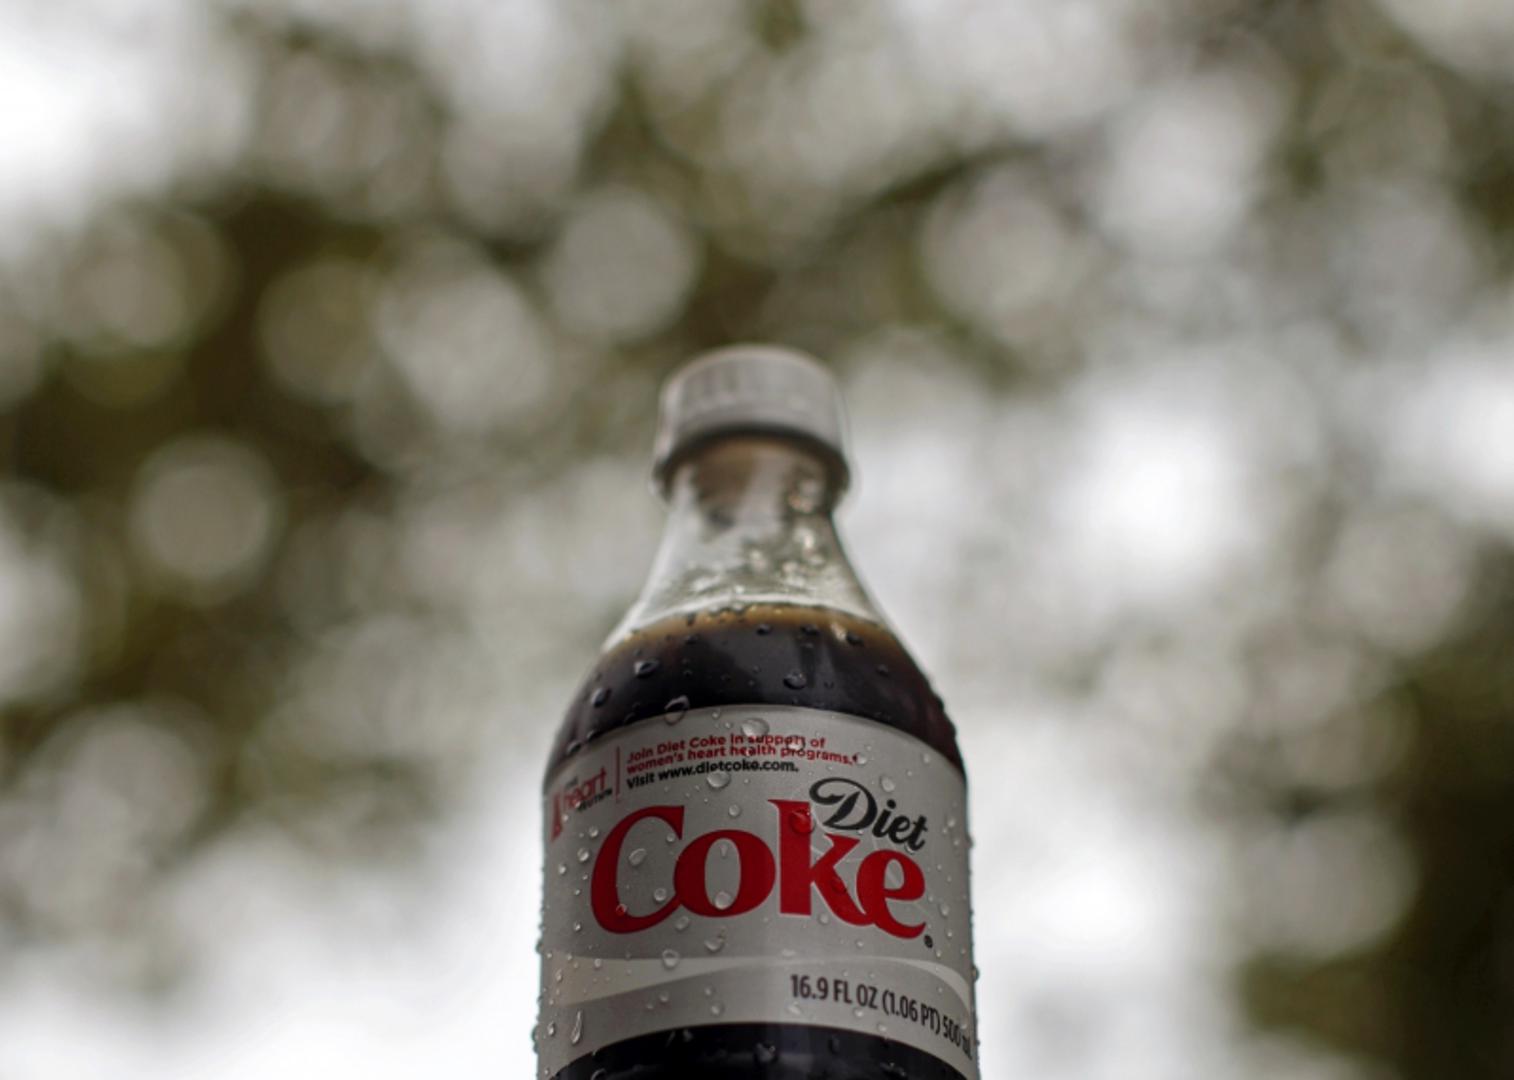 Tvrtka Coca-Cola osnovana je 1892. godine, ali dijetalna Coca-Cola nije bila u prodaji sve do 1982. godine. Diet Coca-Cola predstavljena je 8. srpnja 1982., a uvedena u Sjedinjenim Državama 9. kolovoza, prema tvrtki. Brzo je premašila prodaju prethodne dijetalne cole marke, Tab. 